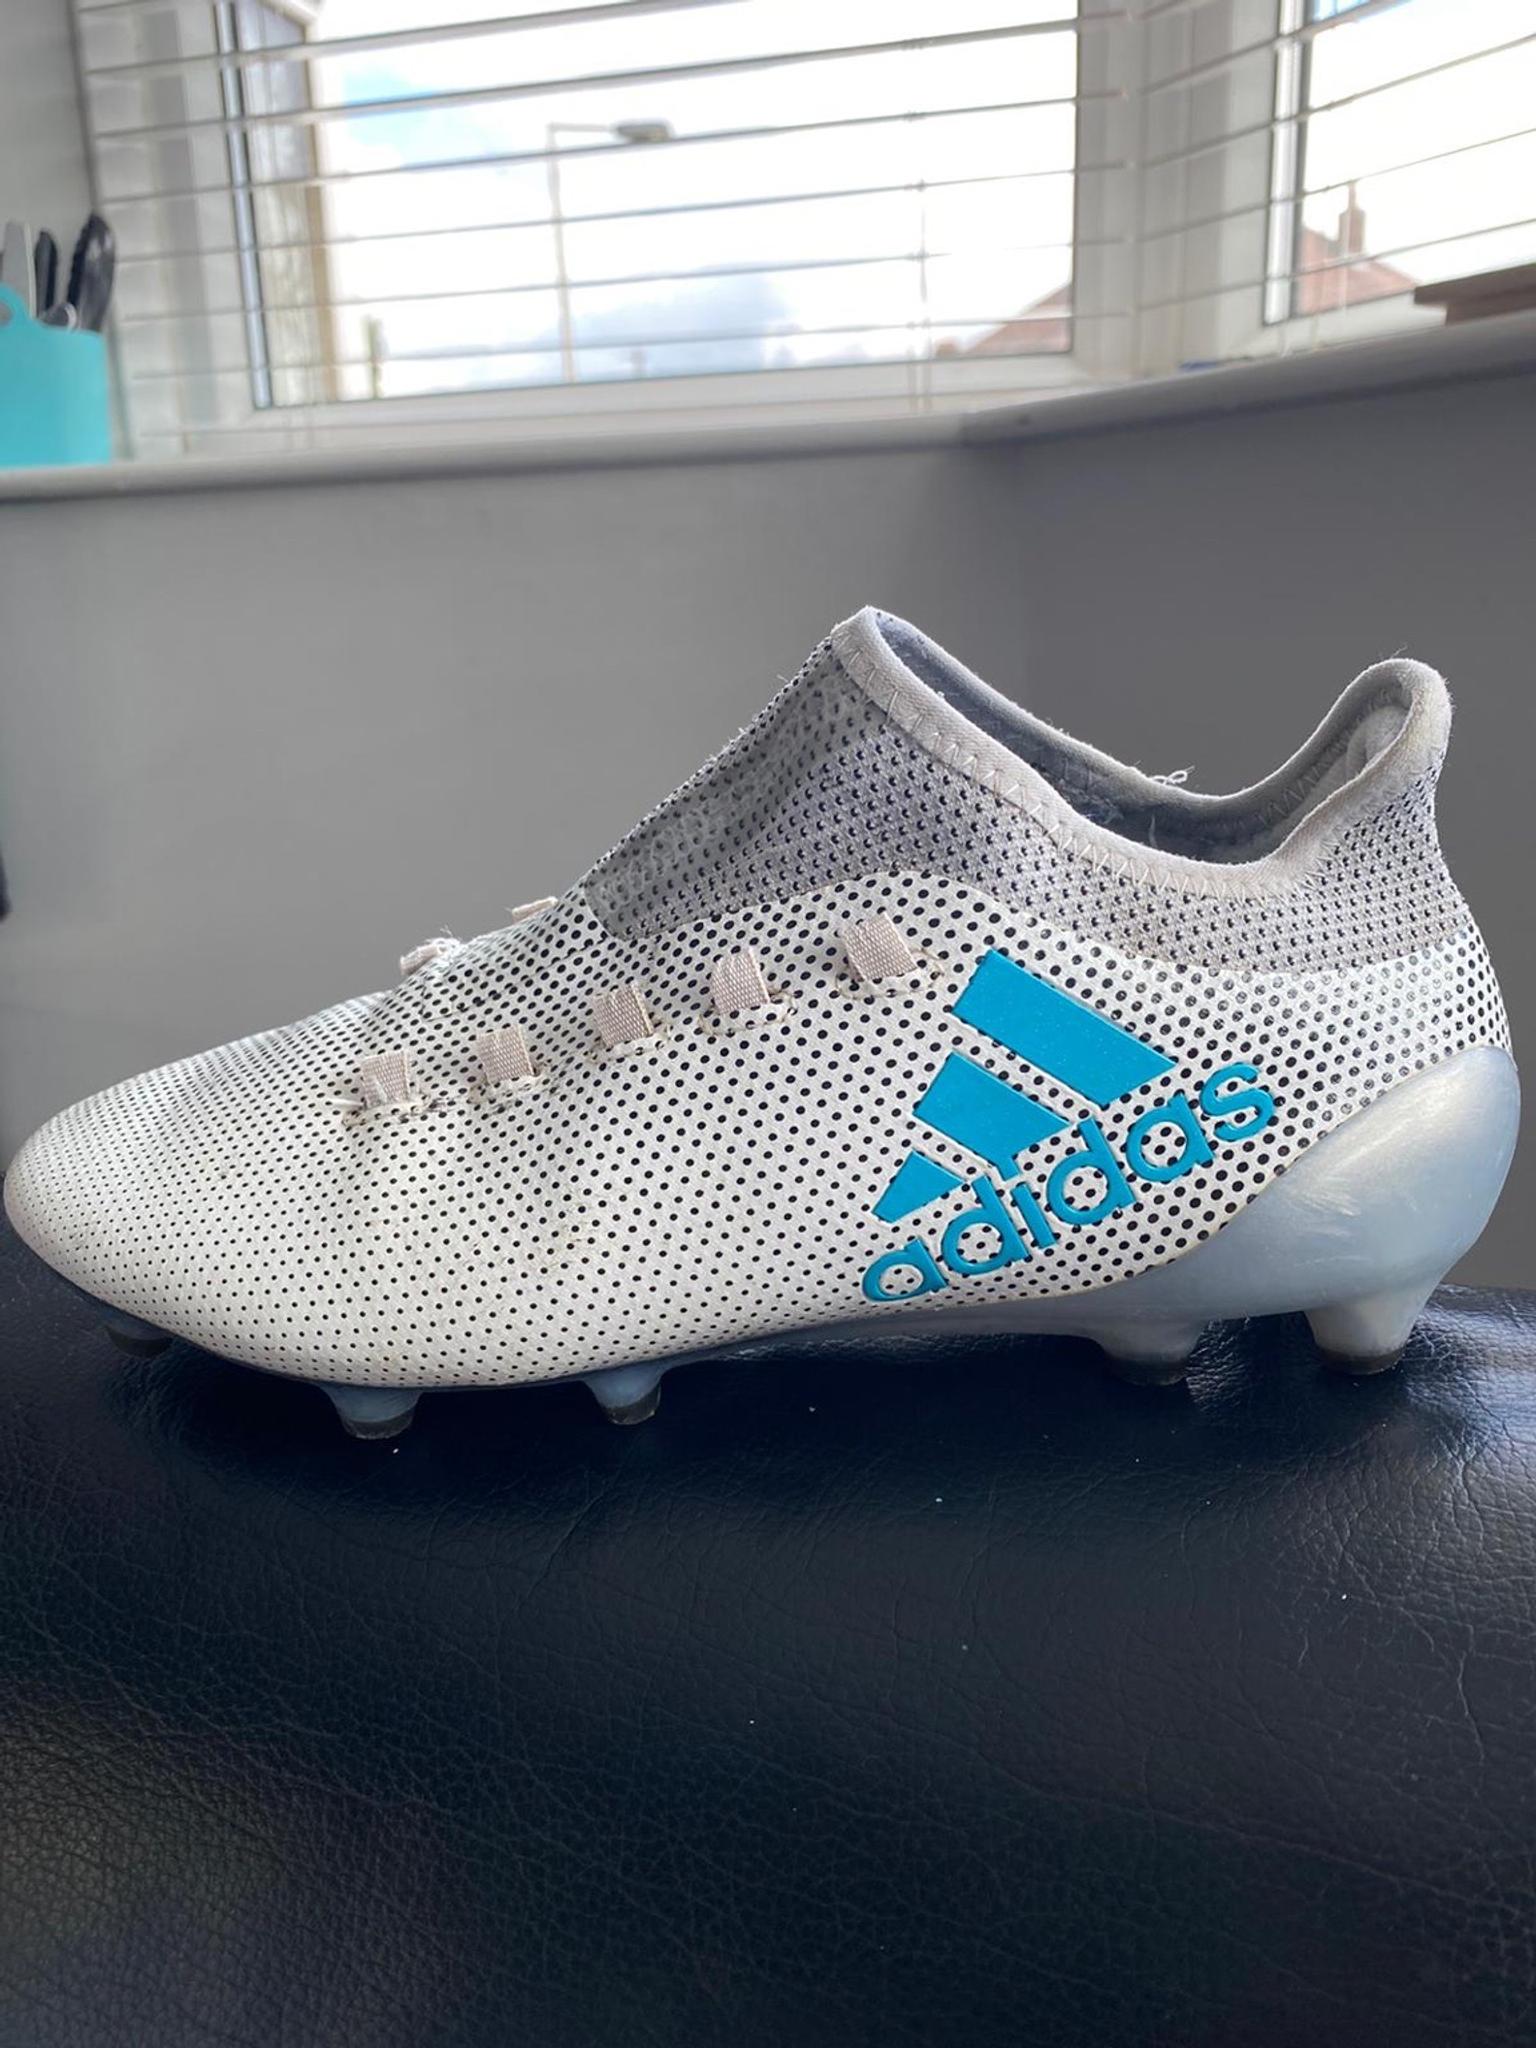 adidas football boots 6.5